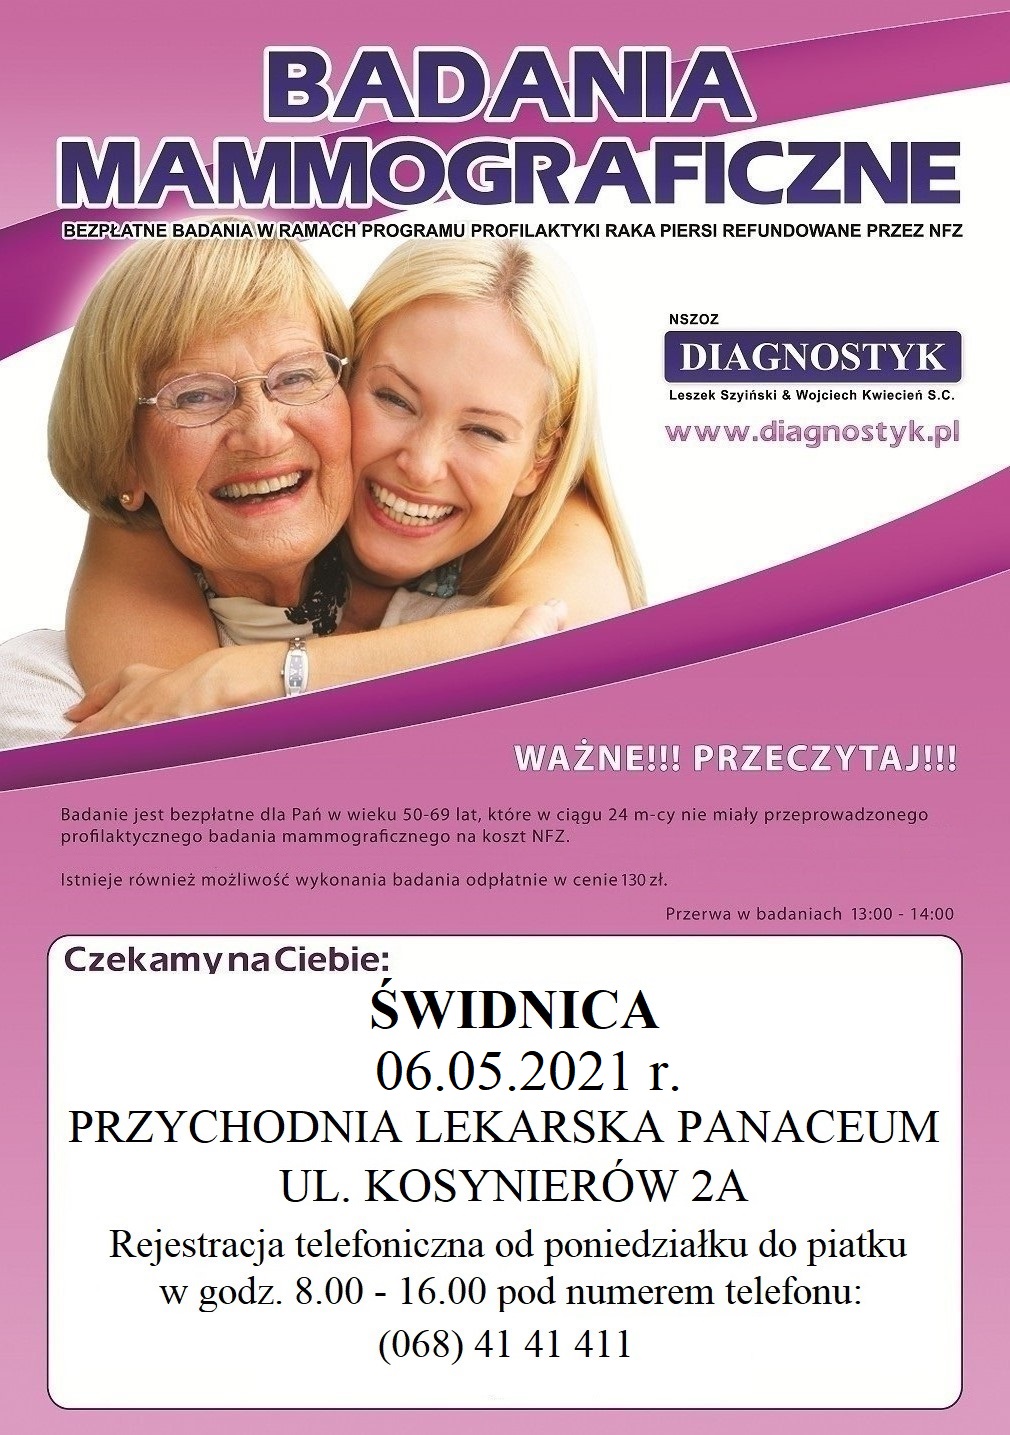 Plakat promujący badania mammograficzne w Świdnicy